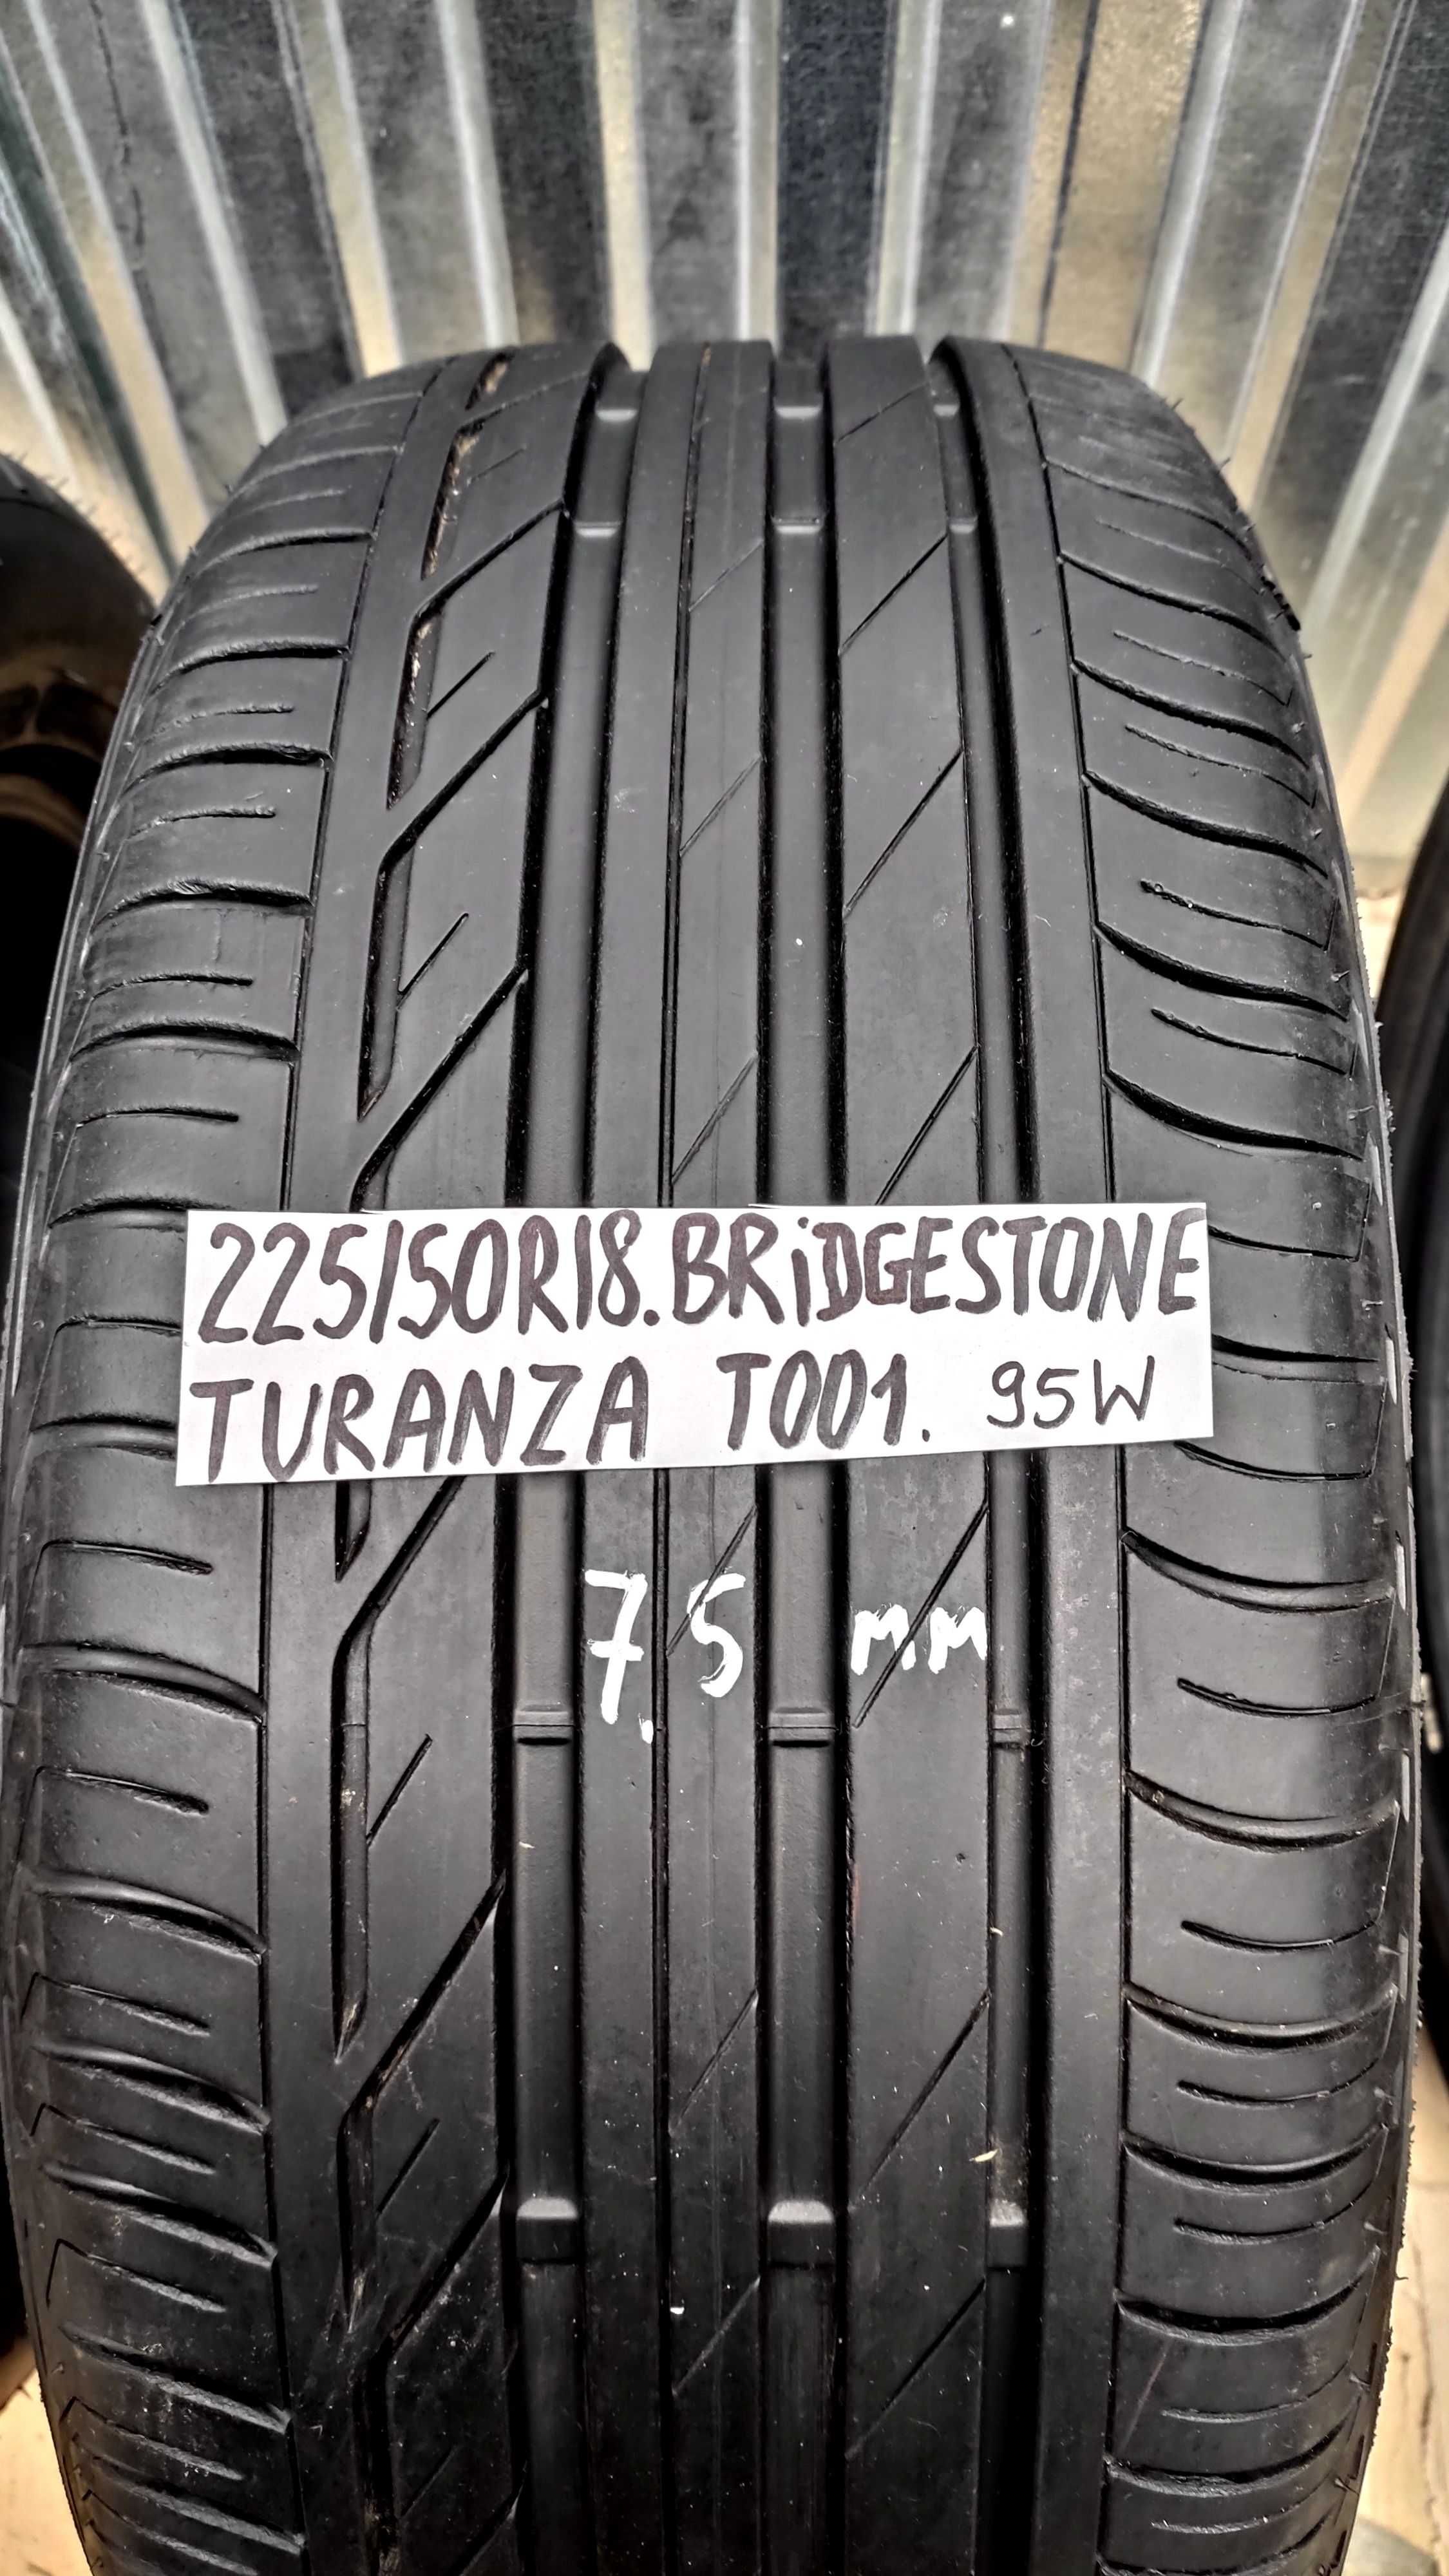 шини 225/50R18 . Bridgestone Turanza T001. Нові.